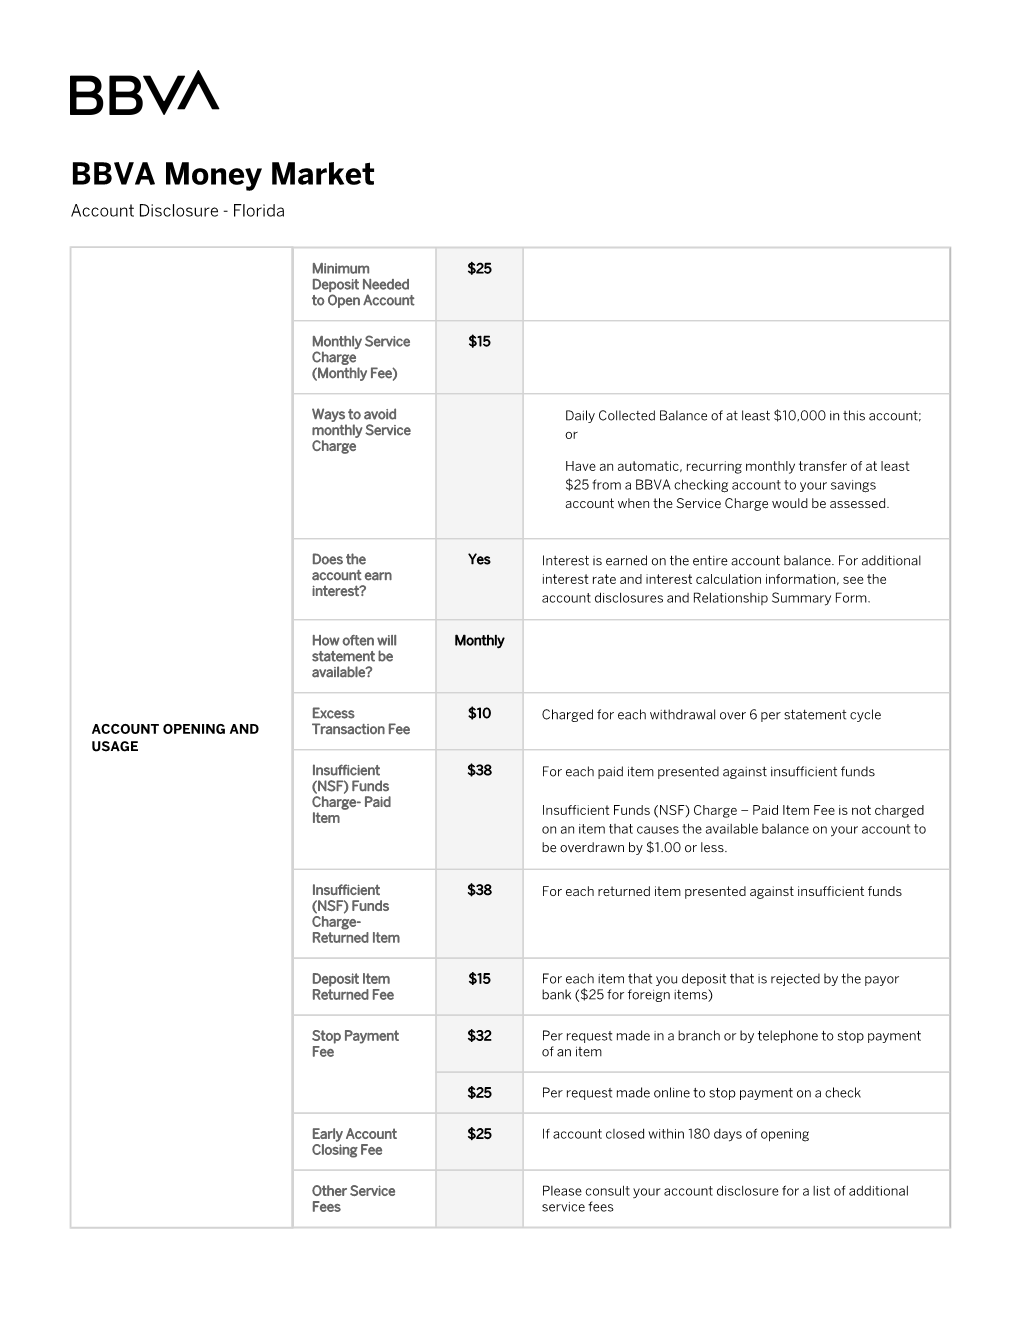 BBVA Money Market Account Disclosure | Florida | BBVA